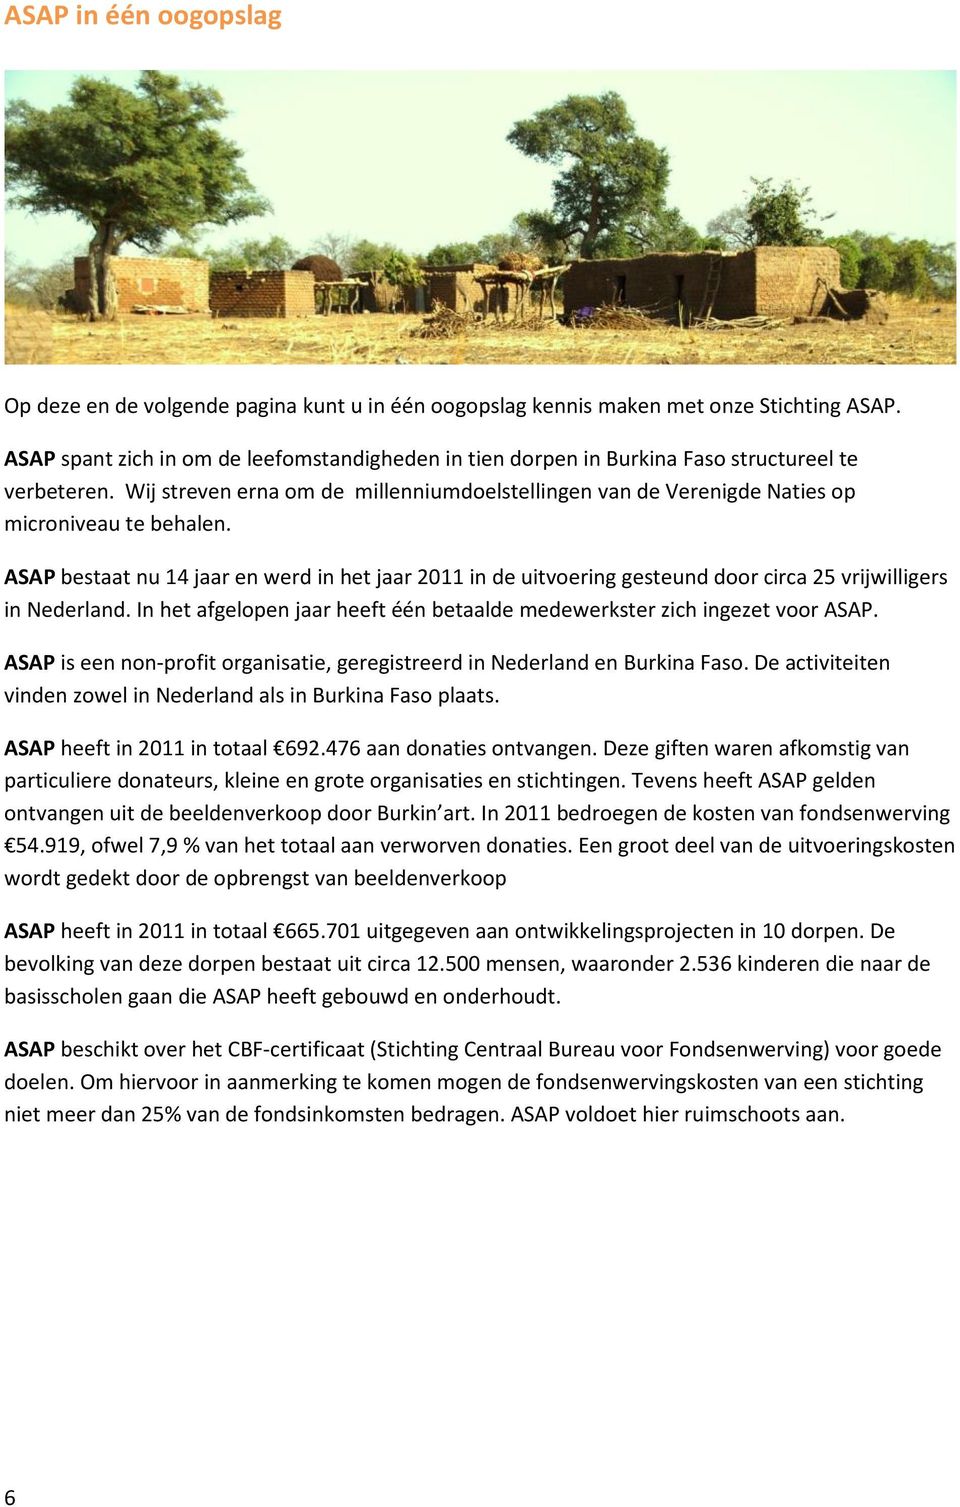 ASAP bestaat nu 14 jaar en werd in het jaar 2011 in de uitvoering gesteund door circa 25 vrijwilligers in Nederland. In het afgelopen jaar heeft één betaalde medewerkster zich ingezet voor ASAP.